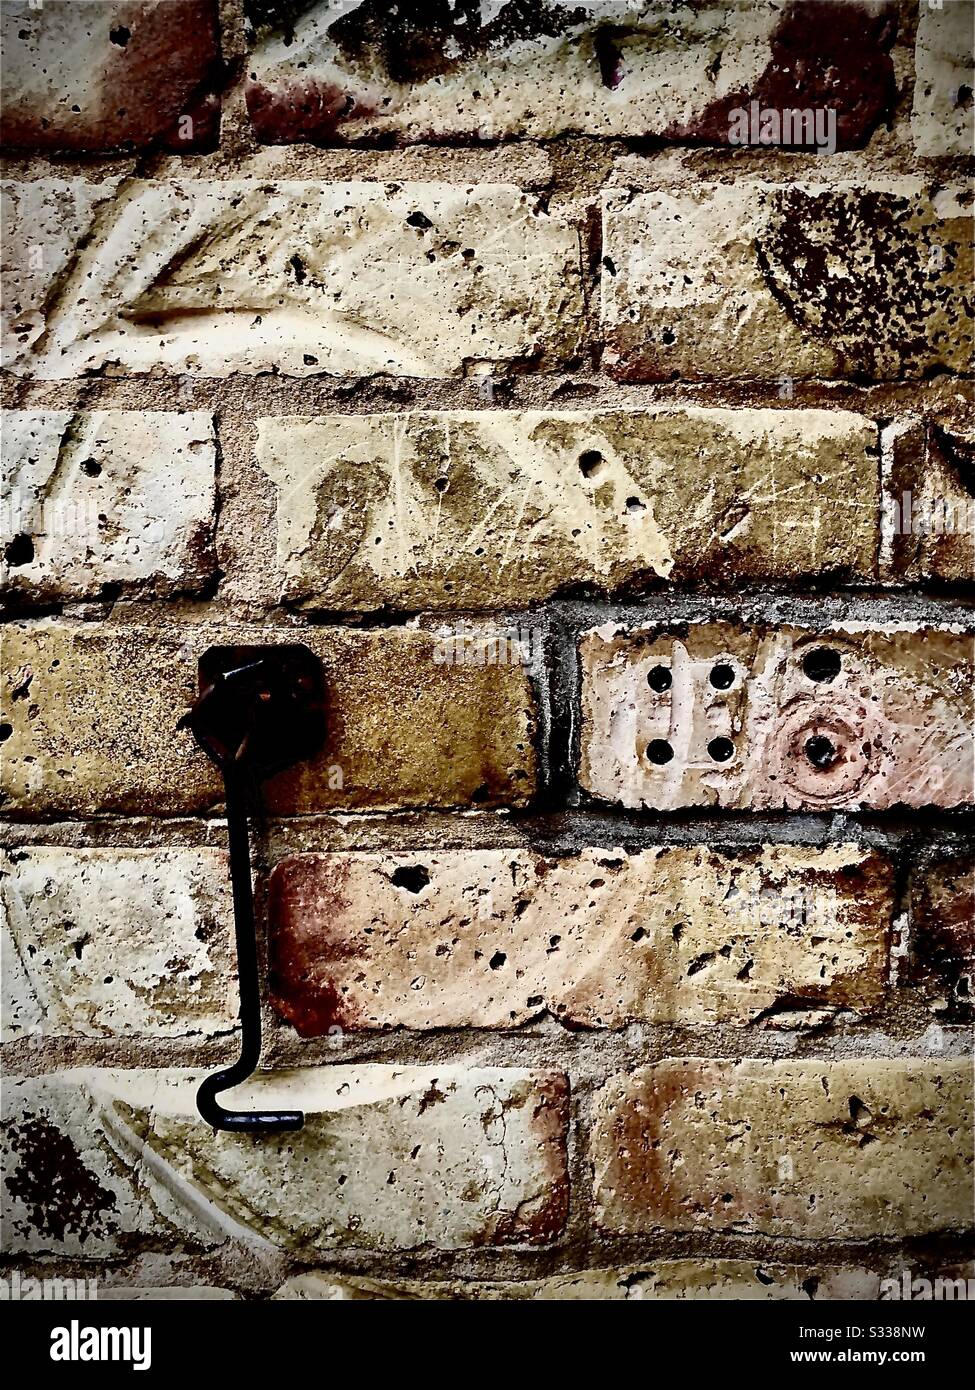 Die Mauer aus Backstein ist von der Metalltürverriegelung abgenutzt, die nach unten hängt. Andere Markierungen und Löcher erodierten und warnten in h Textur. Stockfoto